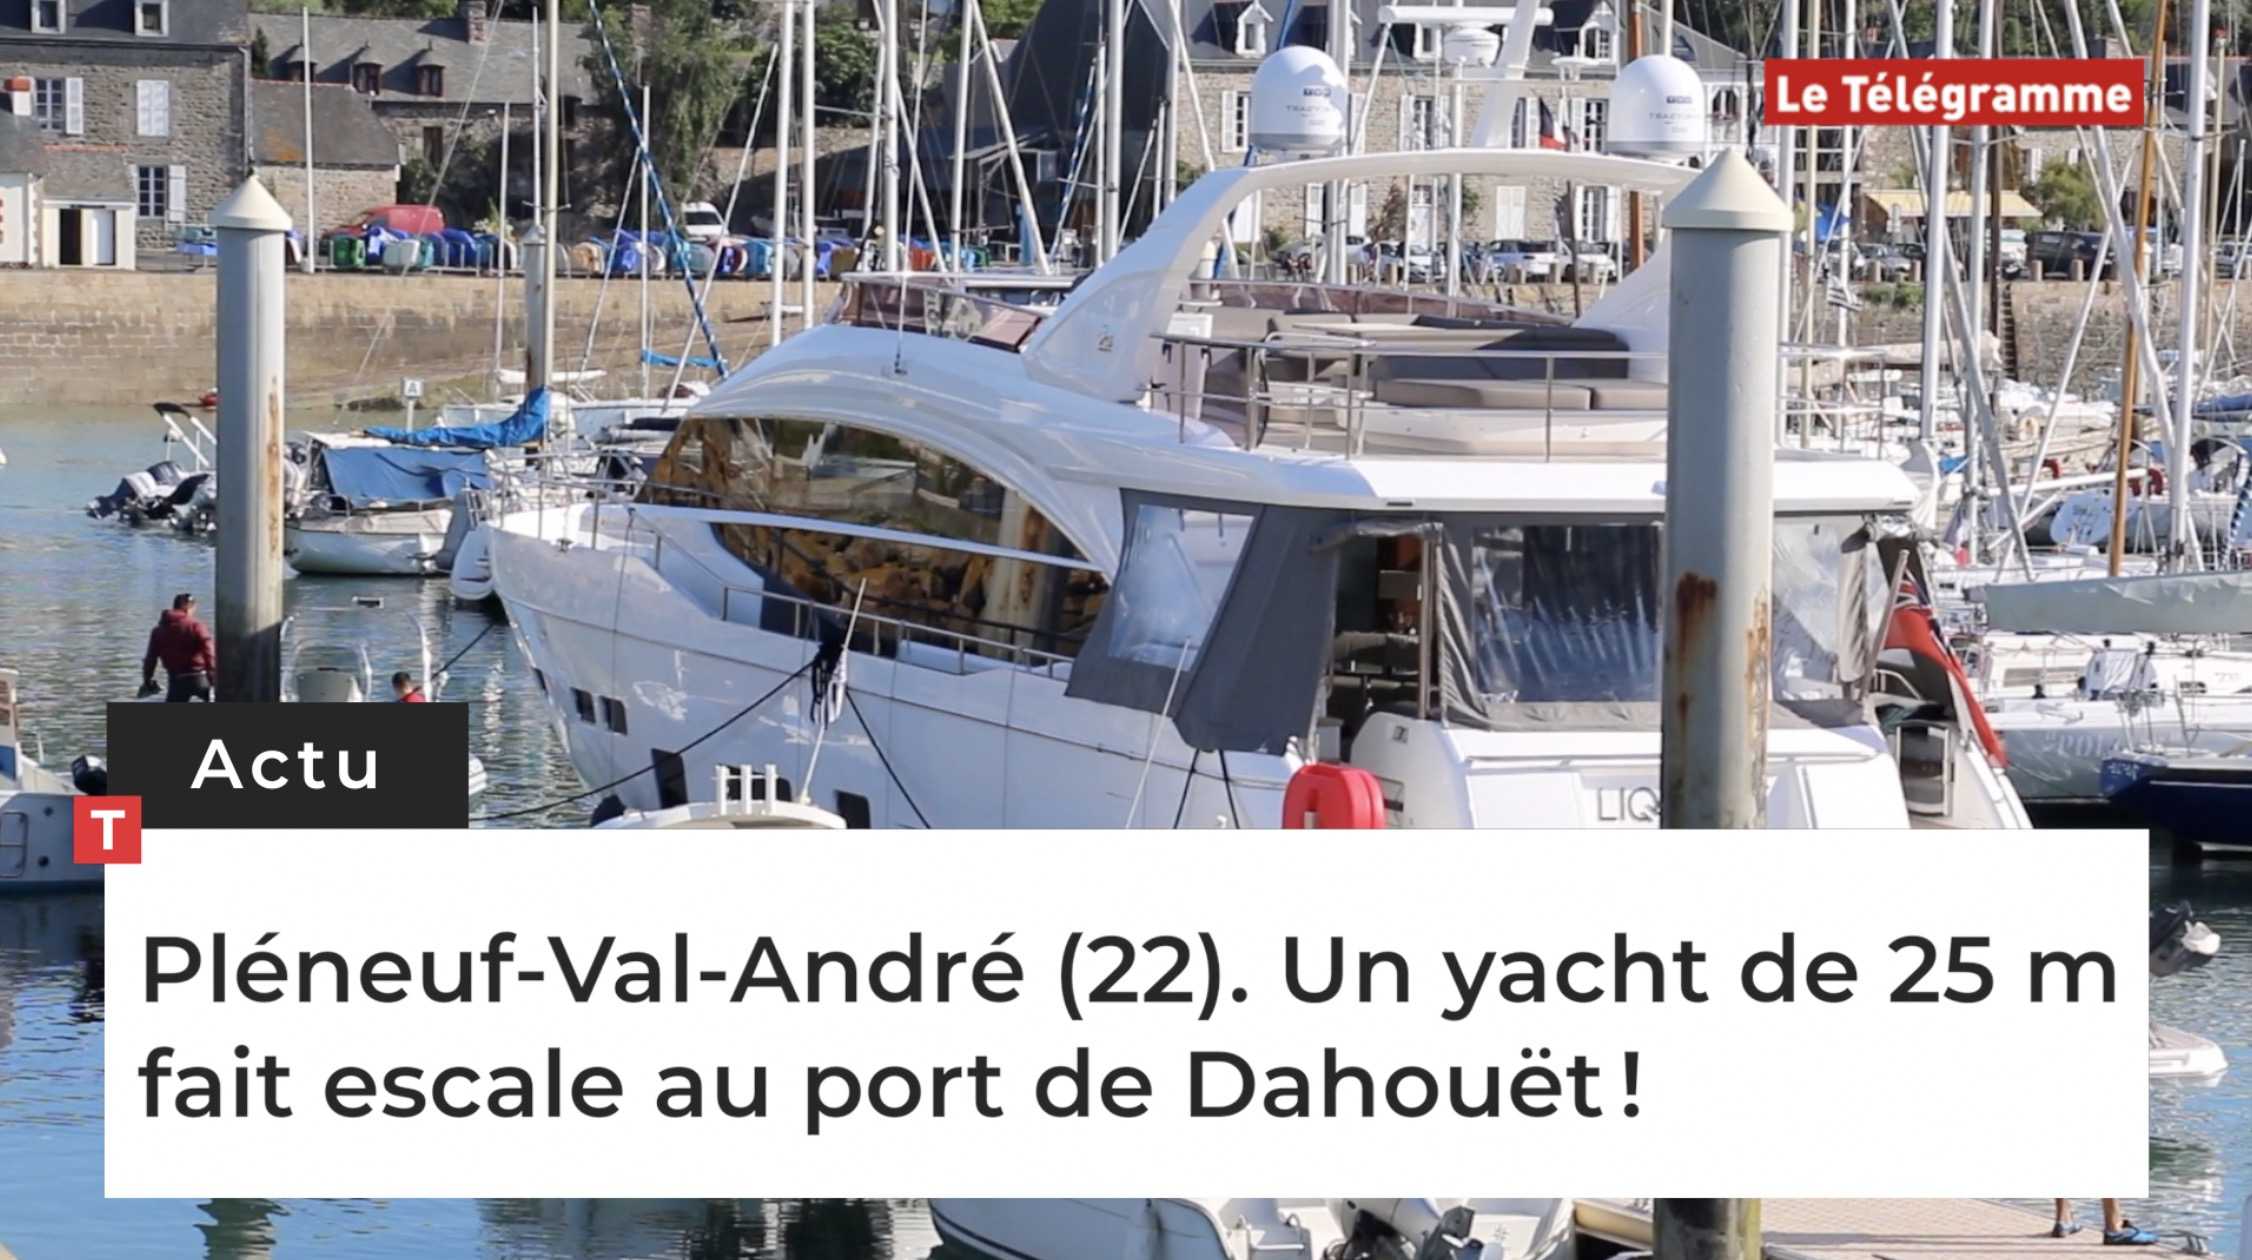 Pléneuf-Val-André (22). Un yacht de 25 m fait escale au port de Dahouët ! (Le Télégramme)